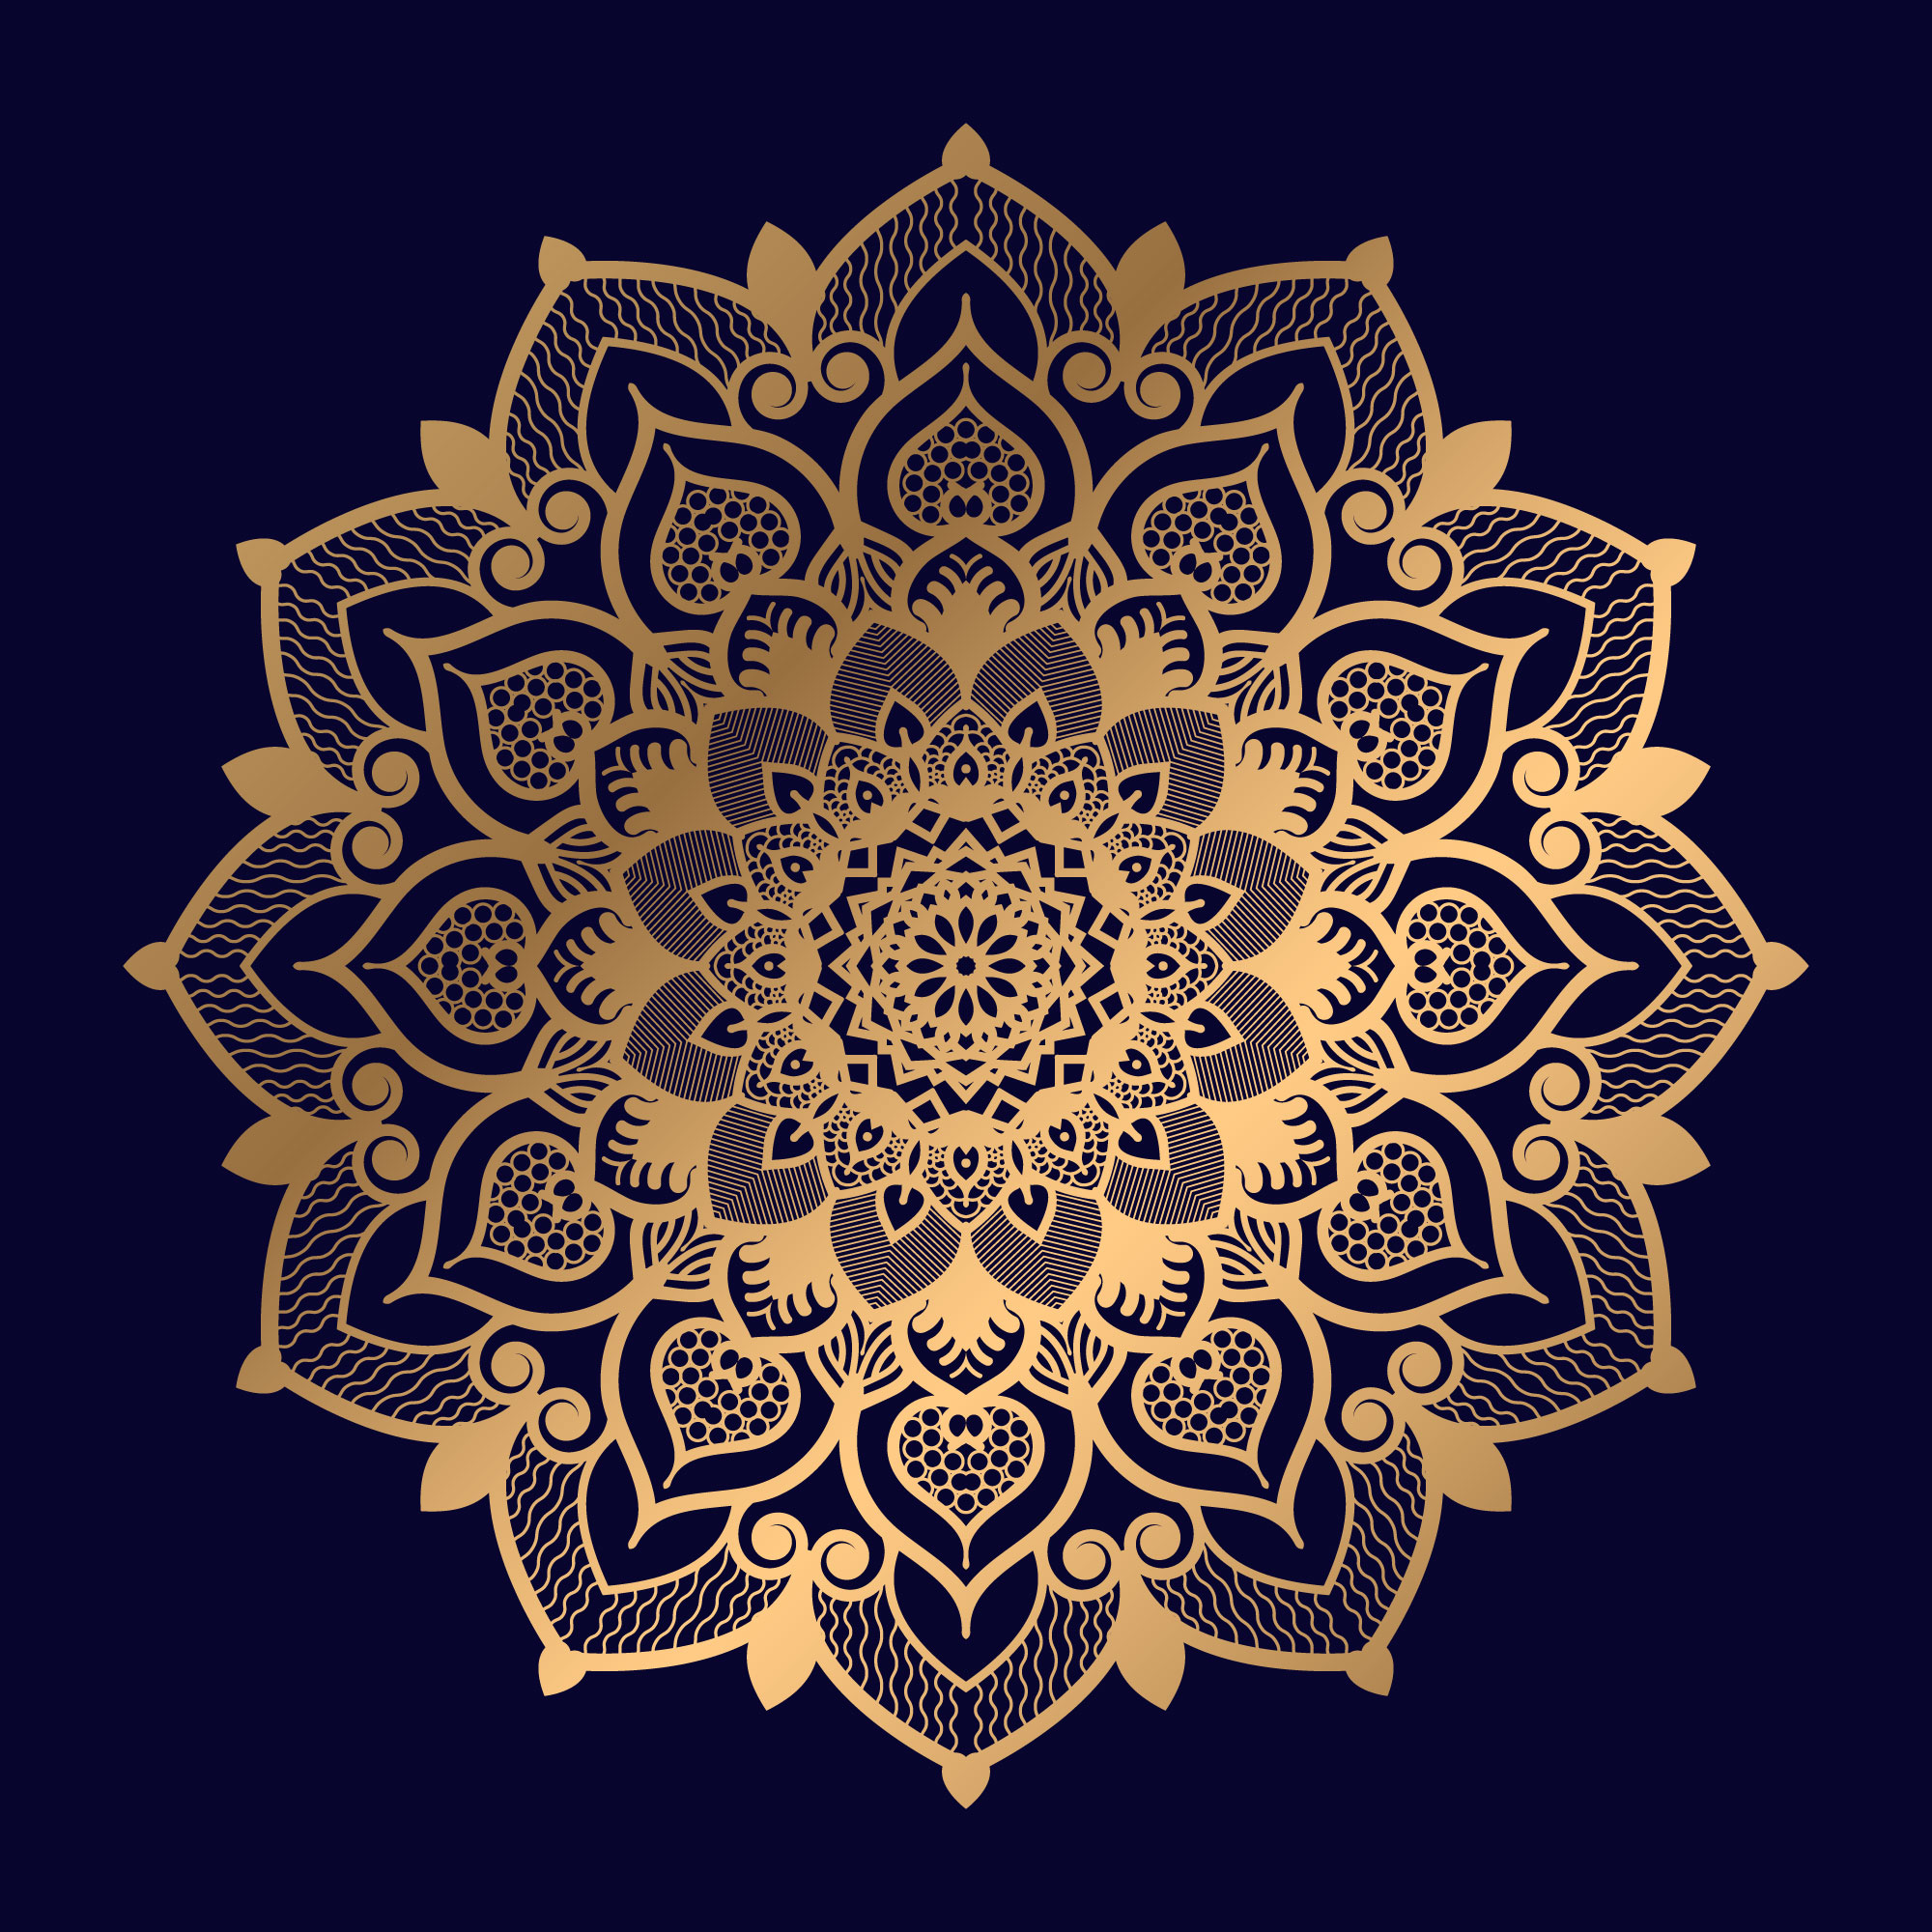 Download Single Floral Golden Mandala Design - Download Free Vectors, Clipart Graphics & Vector Art